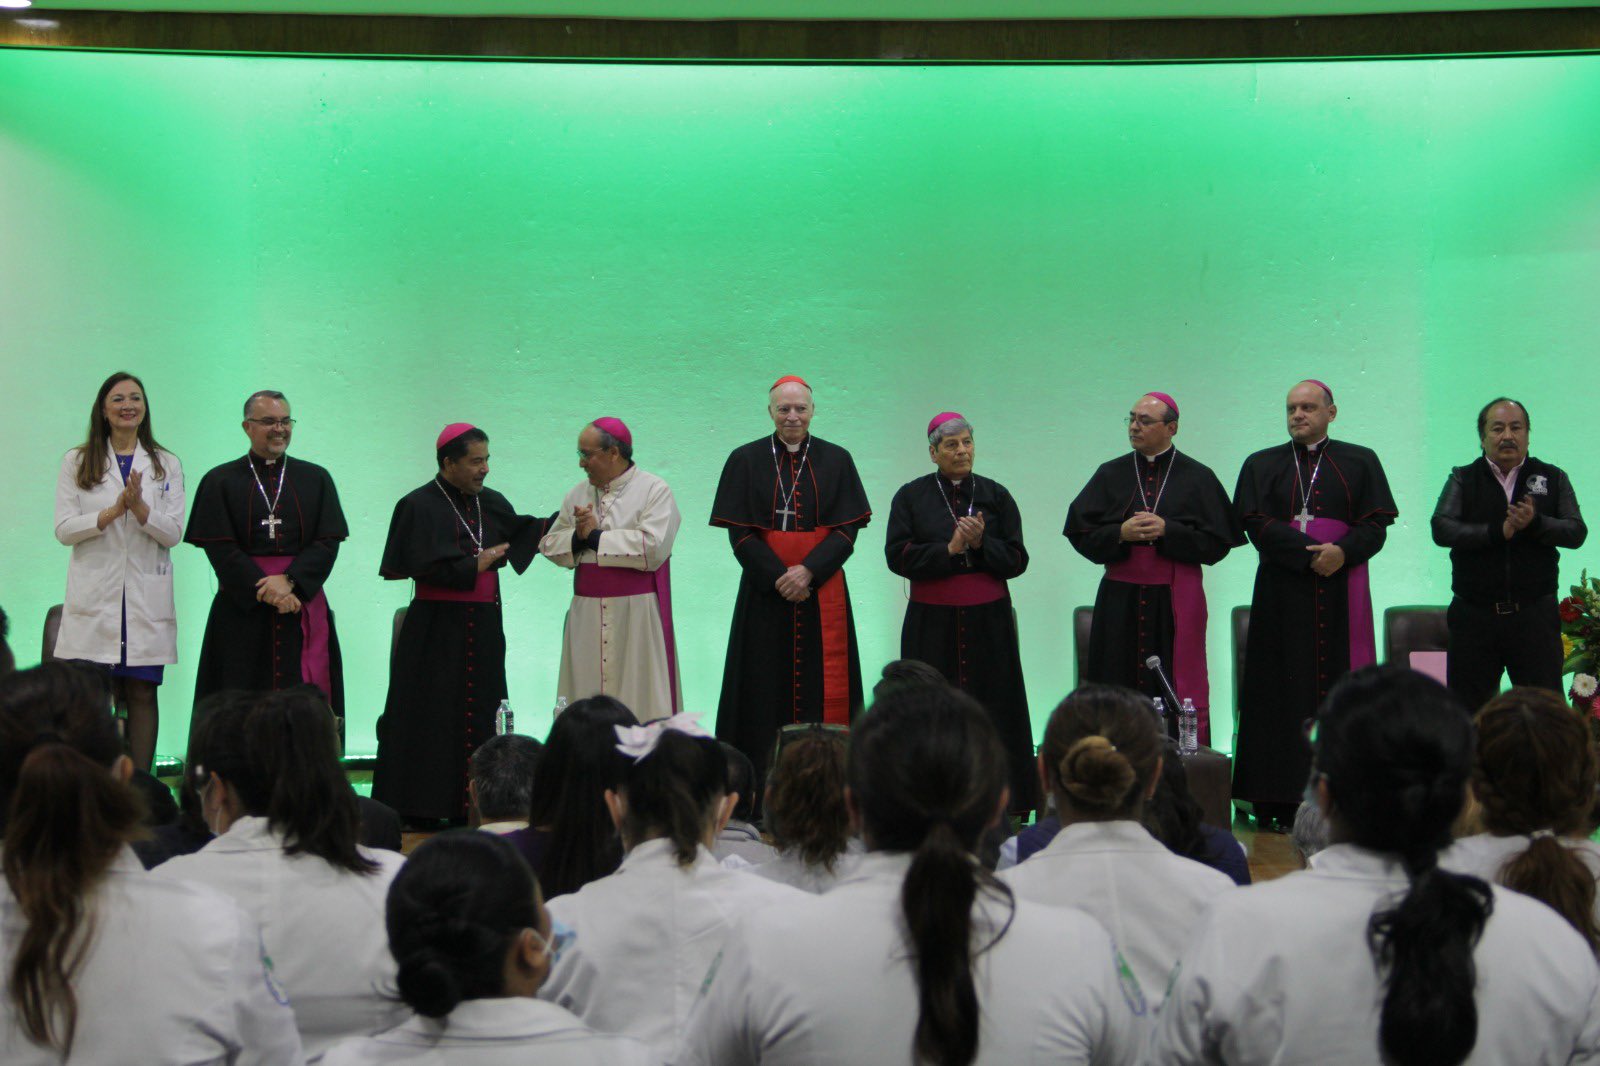 Arquidiócesis Primada de México on X: San Benito, ruega por nosotros. En  este día, celebramos a San Benito Abad, patrono de Europa, fundador de la  Orden de los Benedictinos y un santo